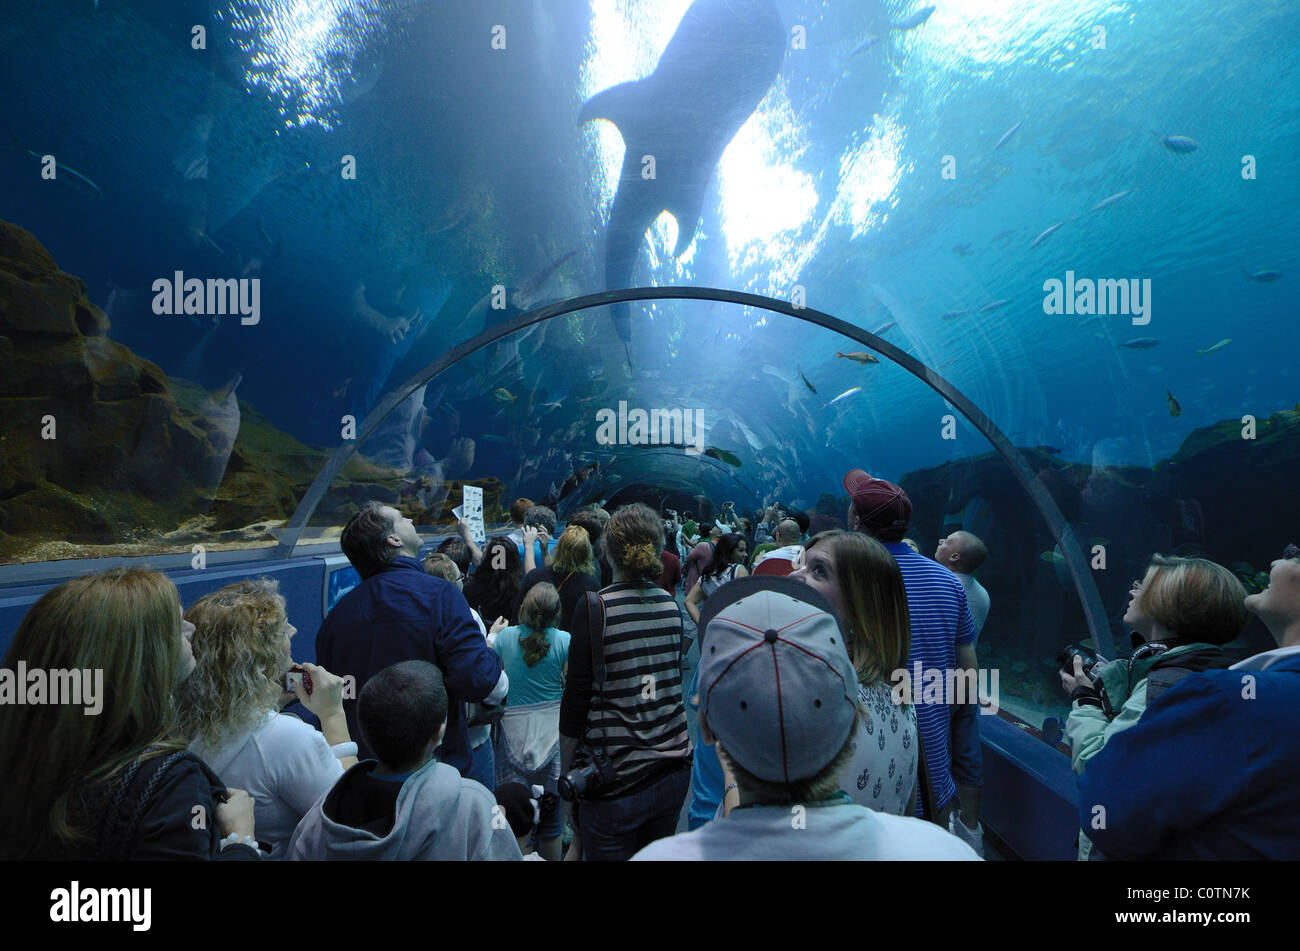 L'Aquarium de Géorgie, le plus grand aquarium du monde, à Atlanta, Géorgie. Le 20 février 2011. Banque D'Images